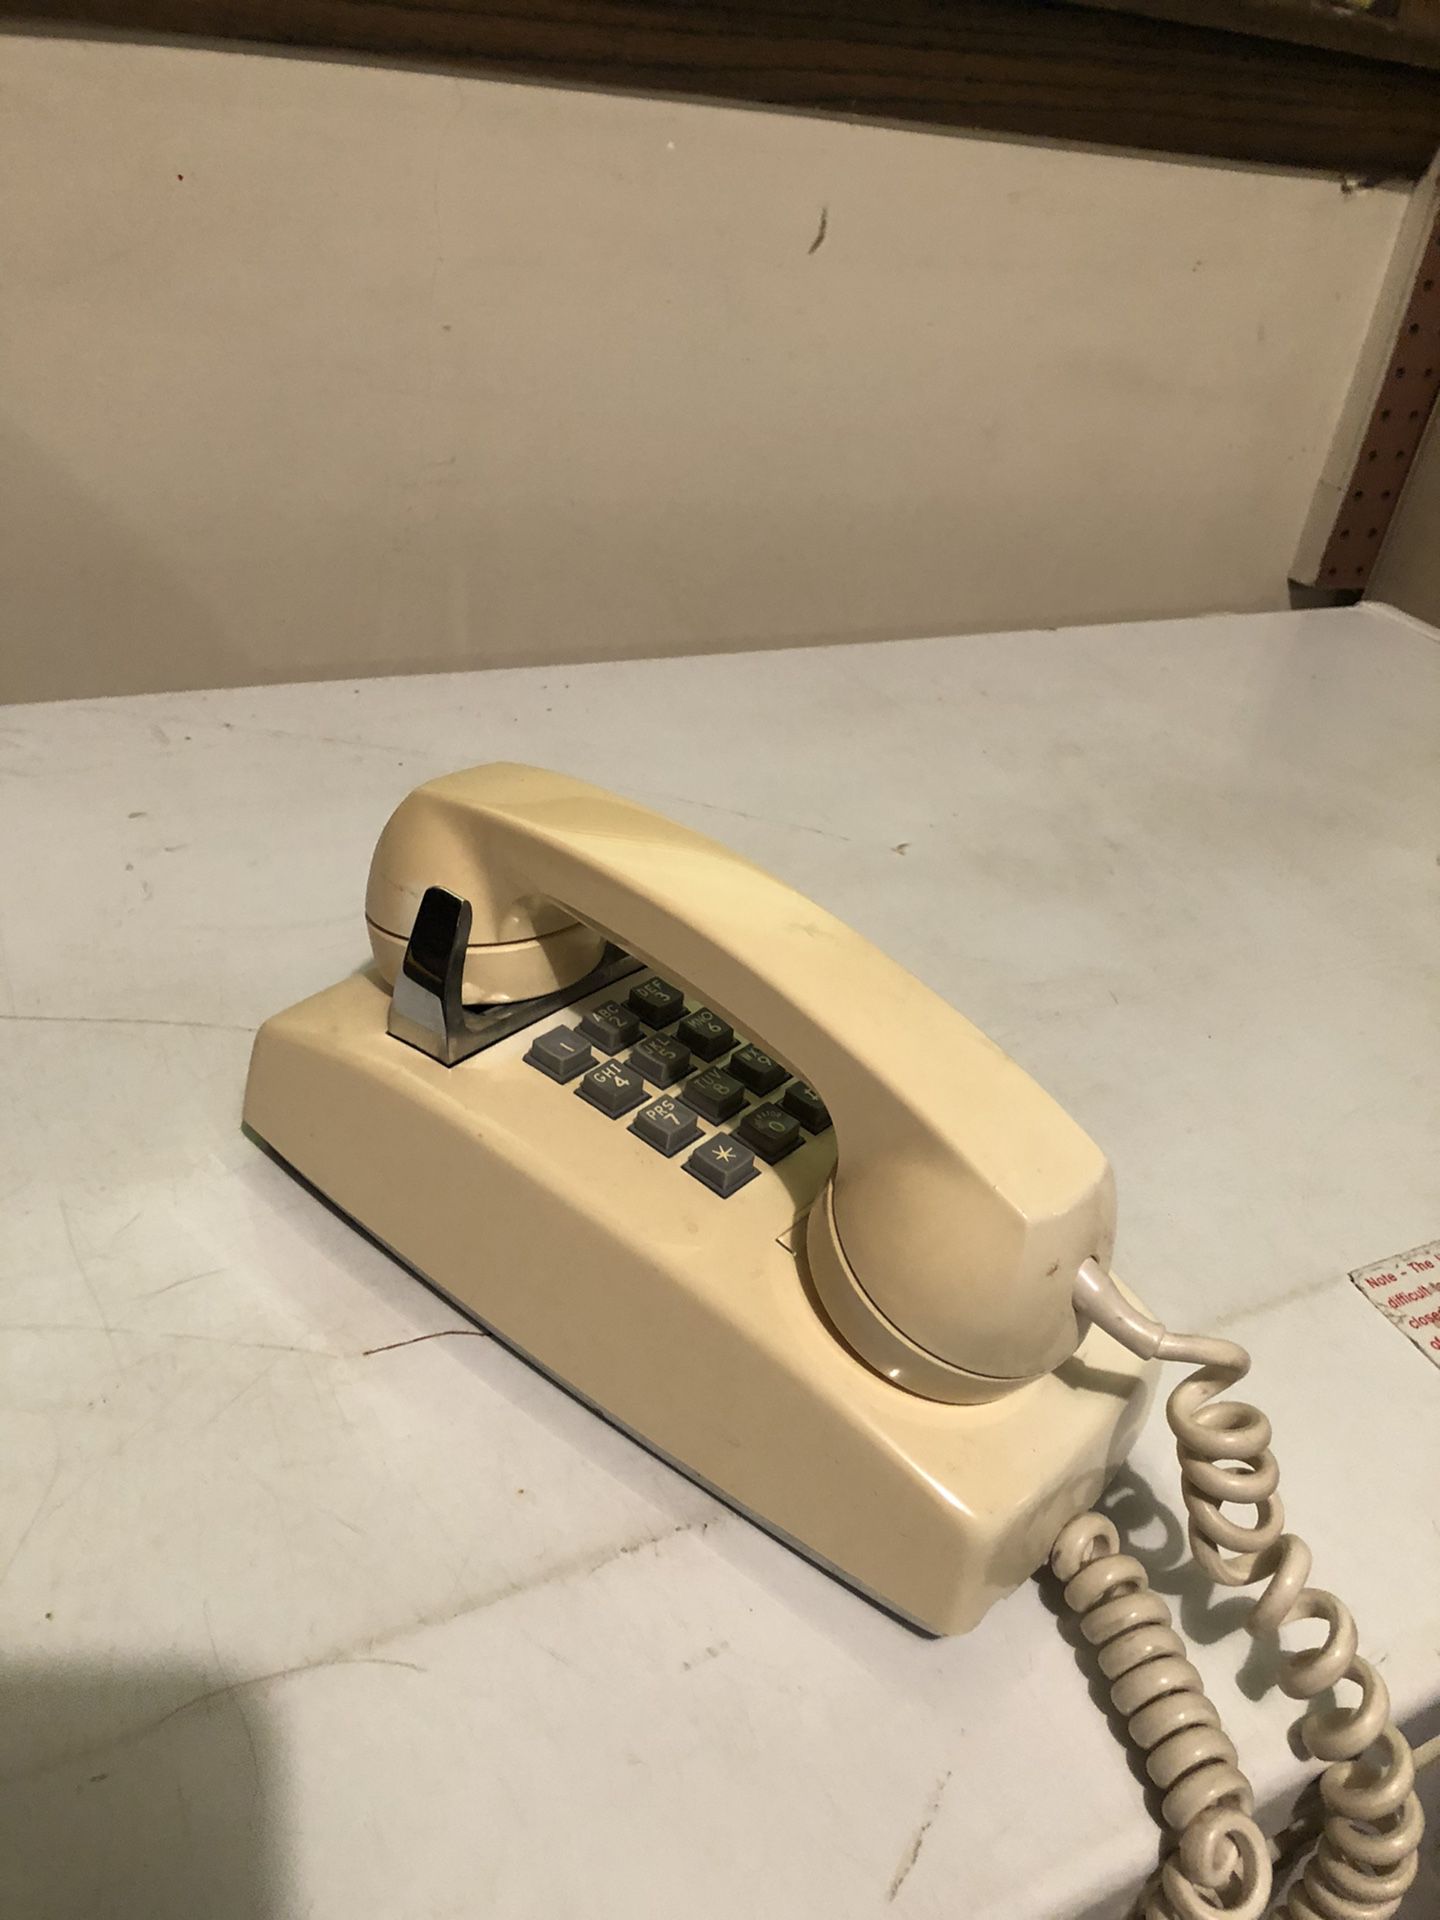 Vintage push button phone